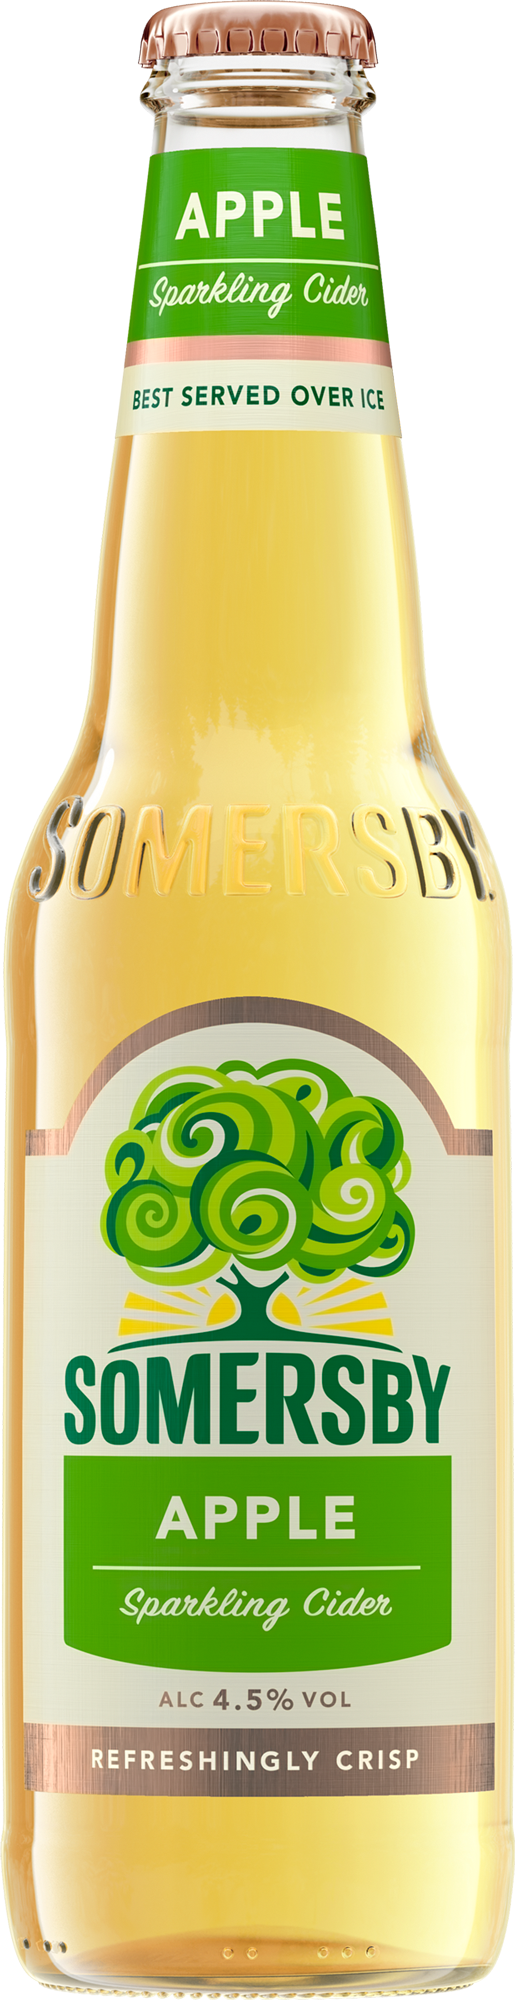 Somersby Apple Cider Kasten 6 x 4 x 0,33 l Glas Mehrweg